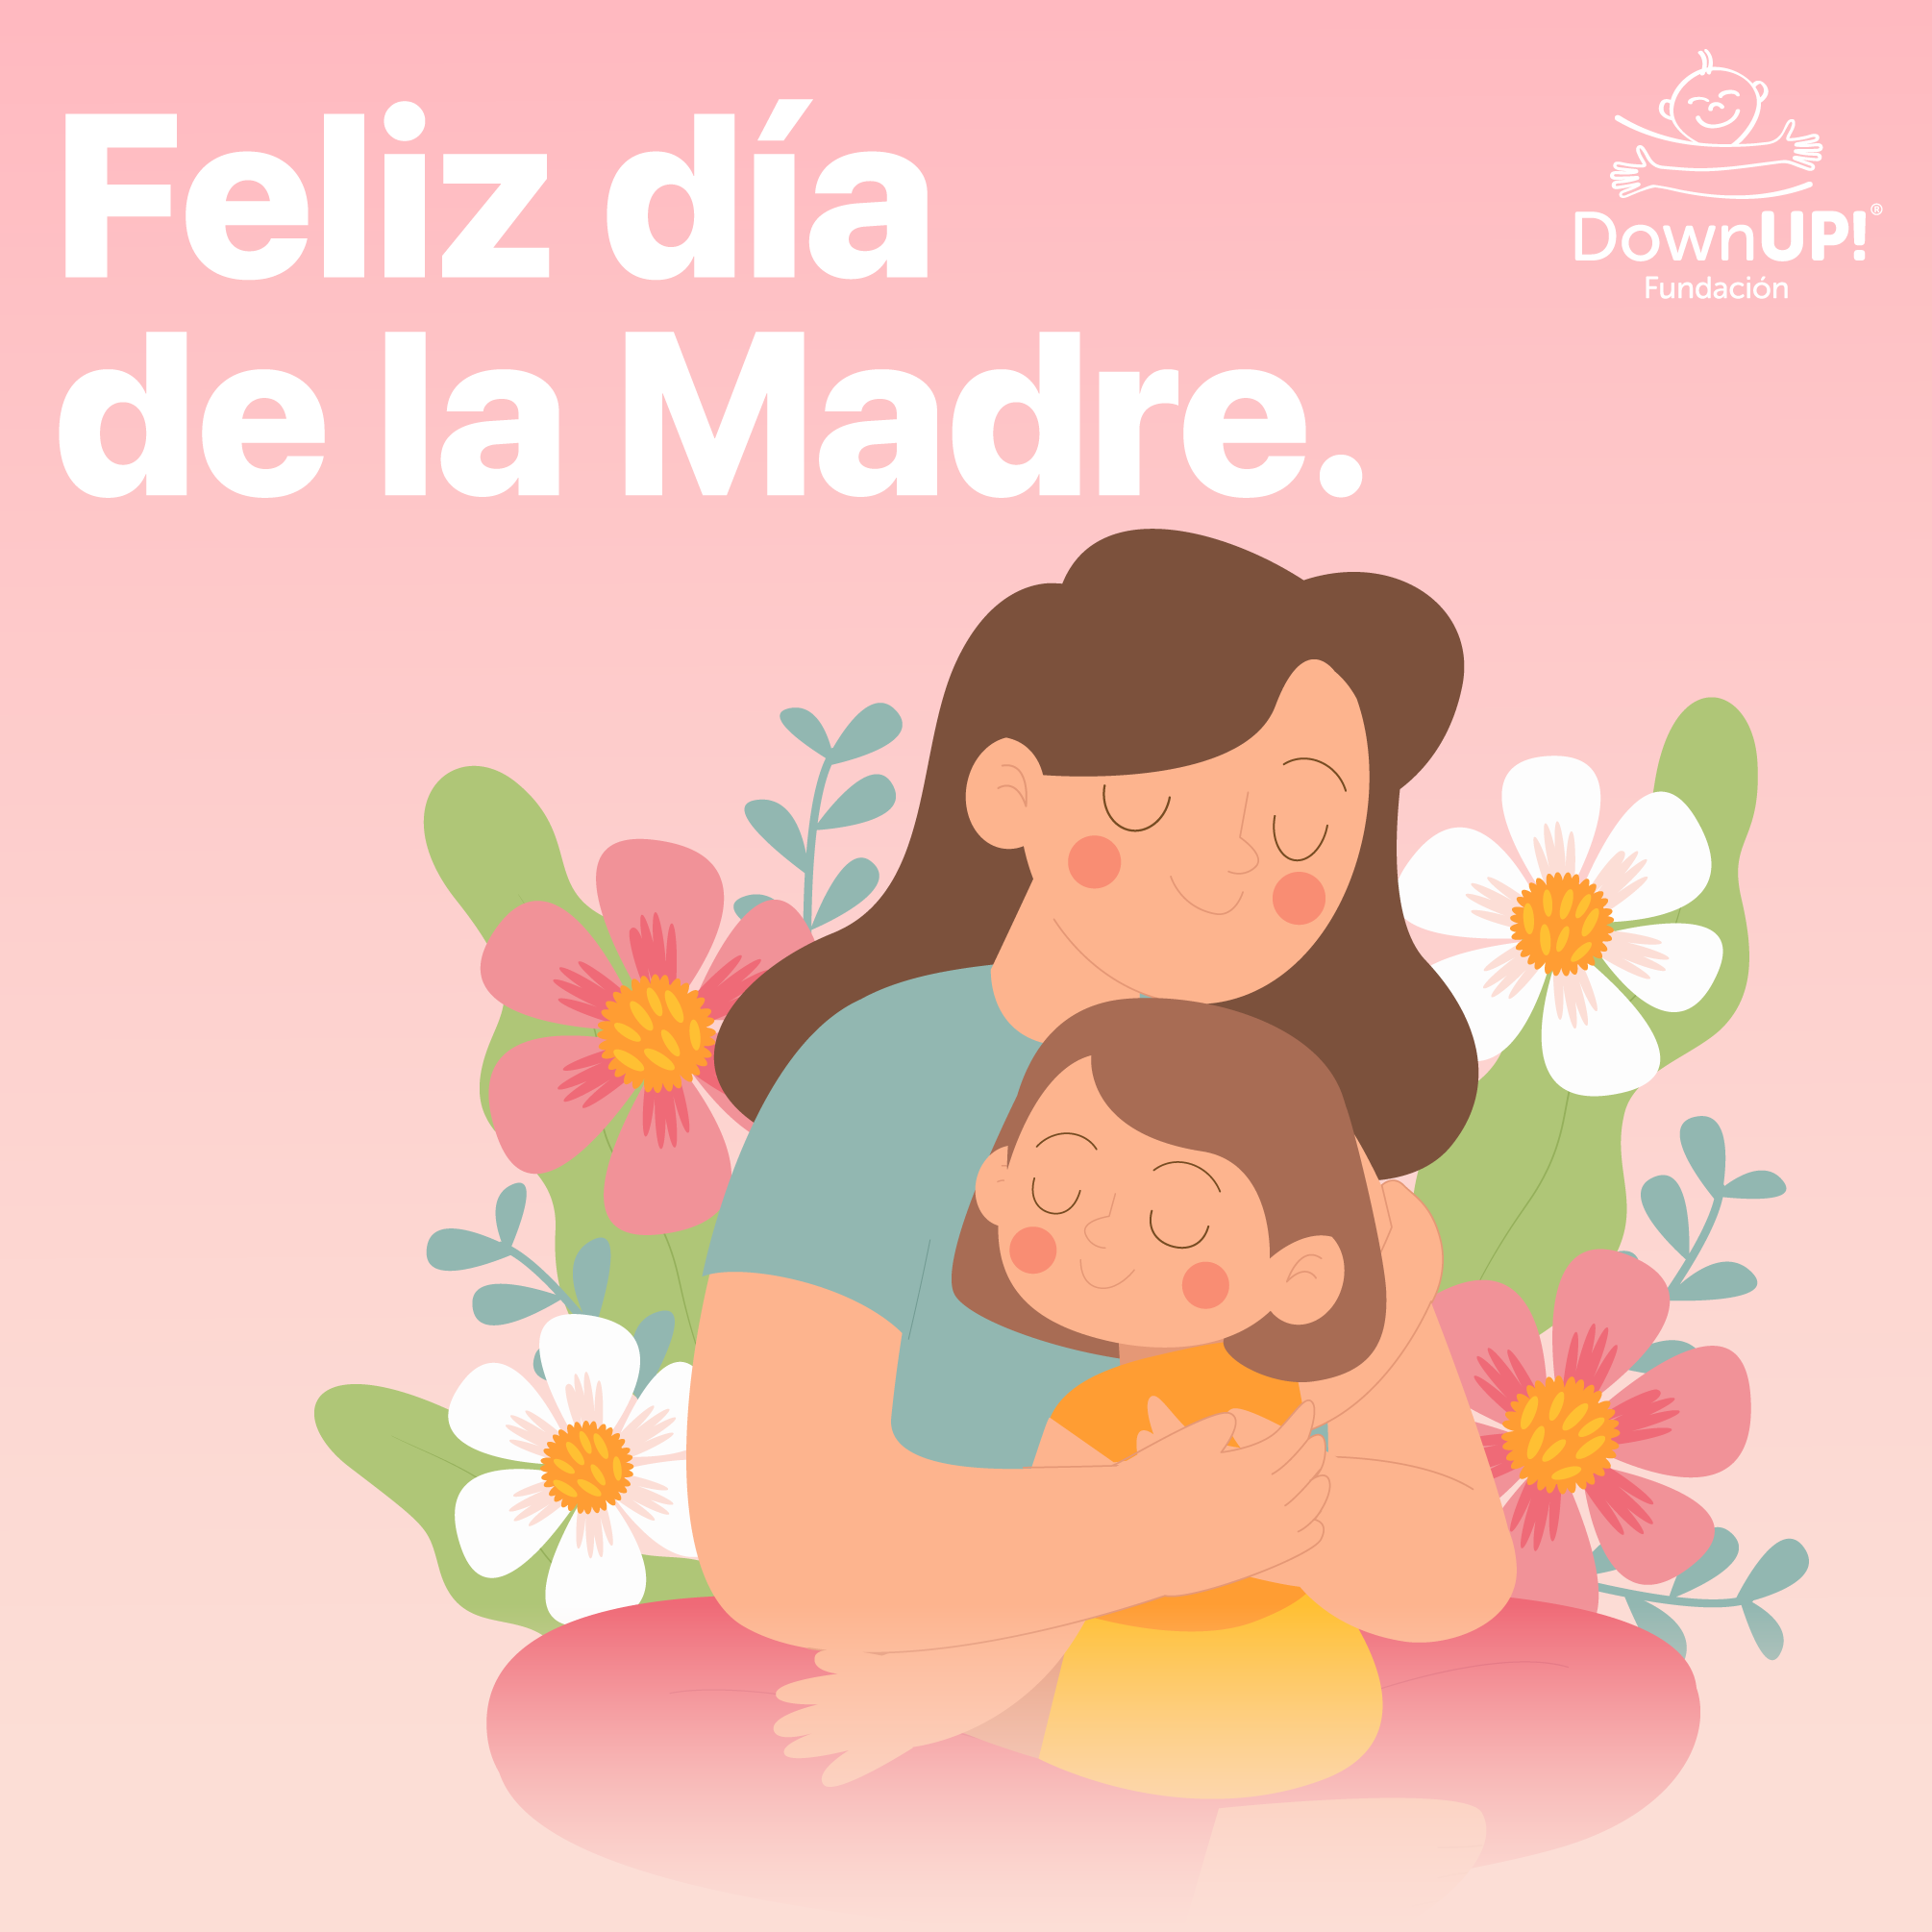 Día de las Madres – ¿Qué le dirías? – Fundación DownUp